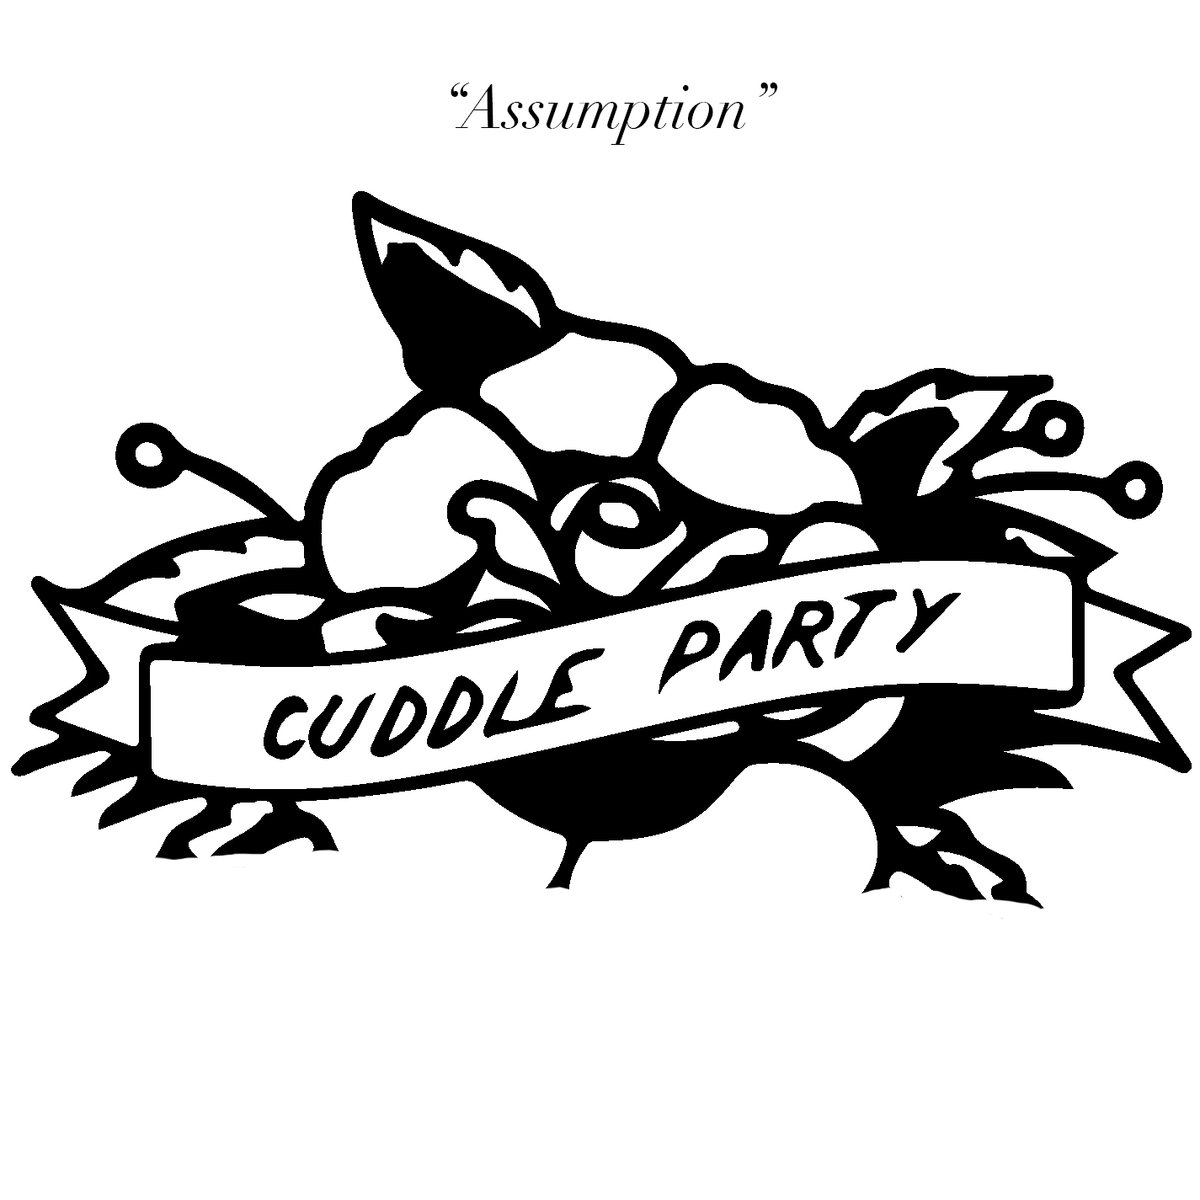 Cuddle Party – “Assumption”